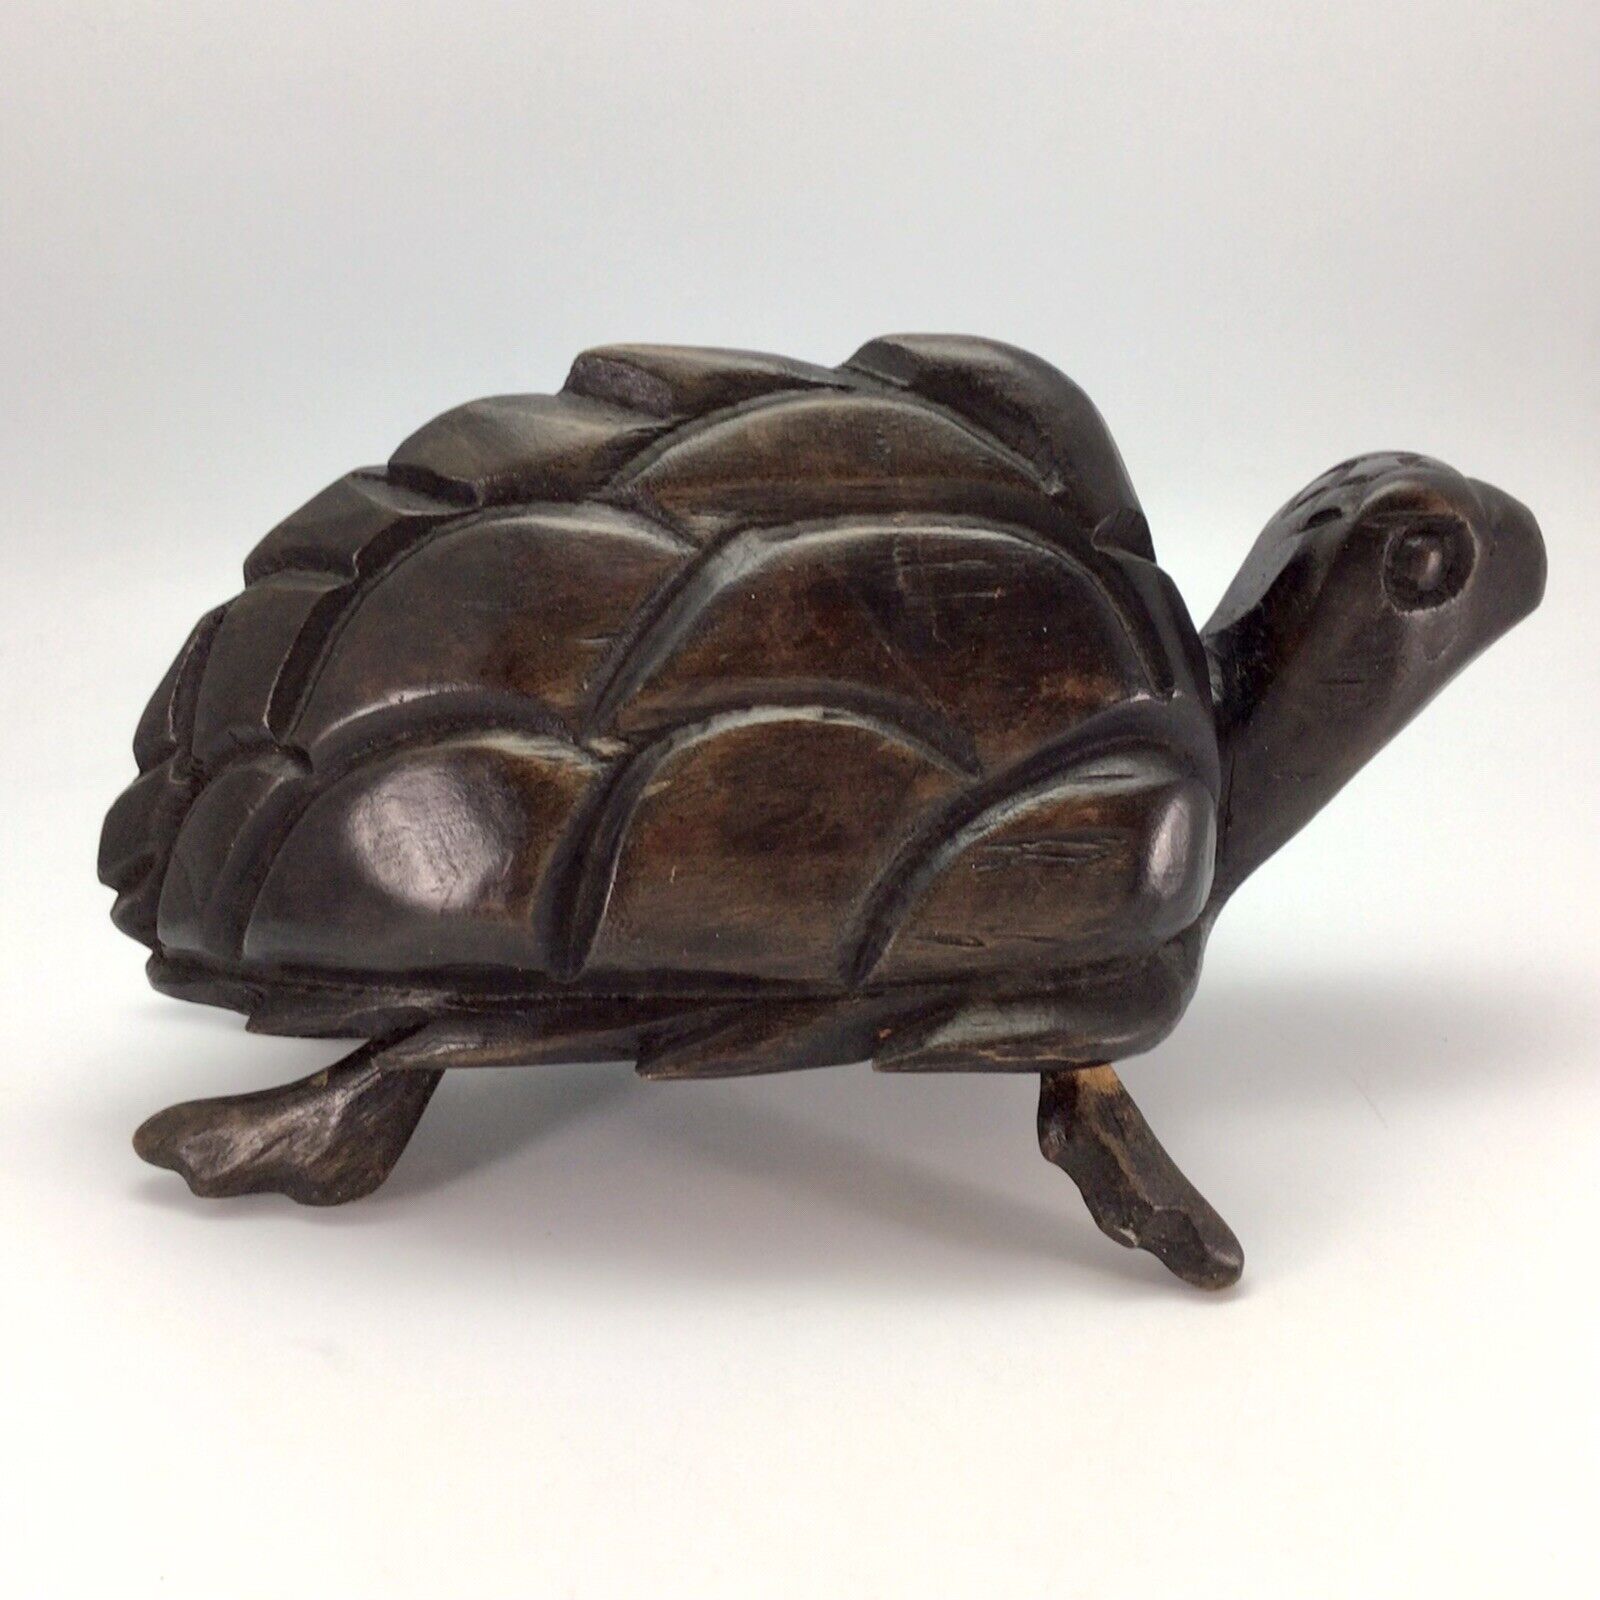 Hand Carved Solid Wood Turtle Figurine 11.5” Large Dark Brown